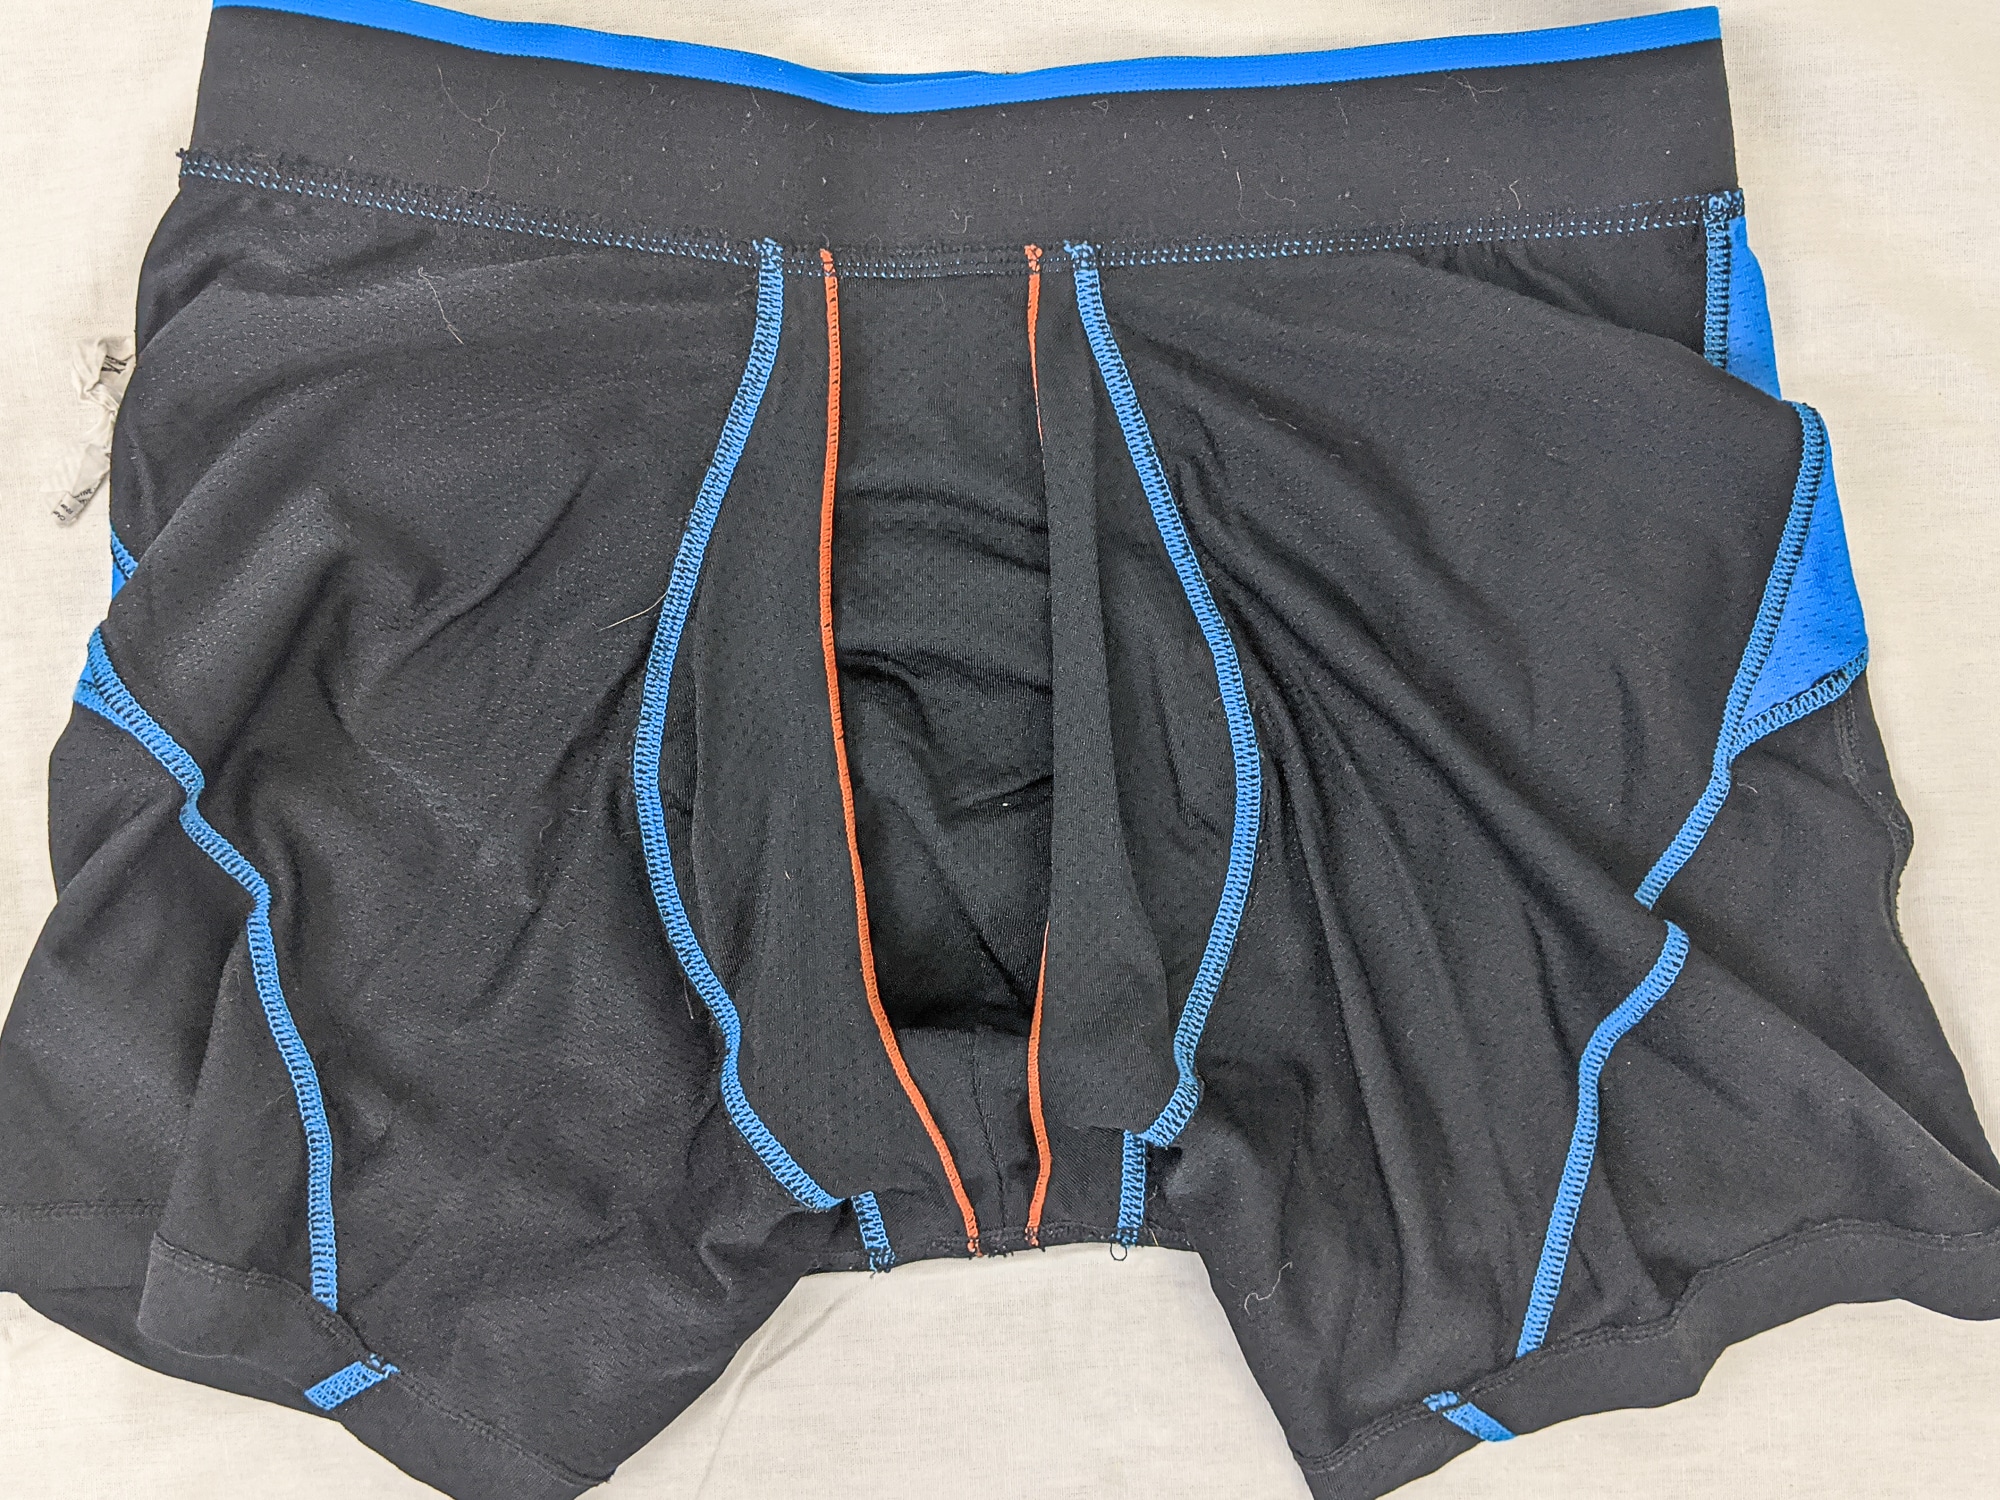 Saxx Men's Underwear – Kinetic HD Light-Compression Mesh Boxer